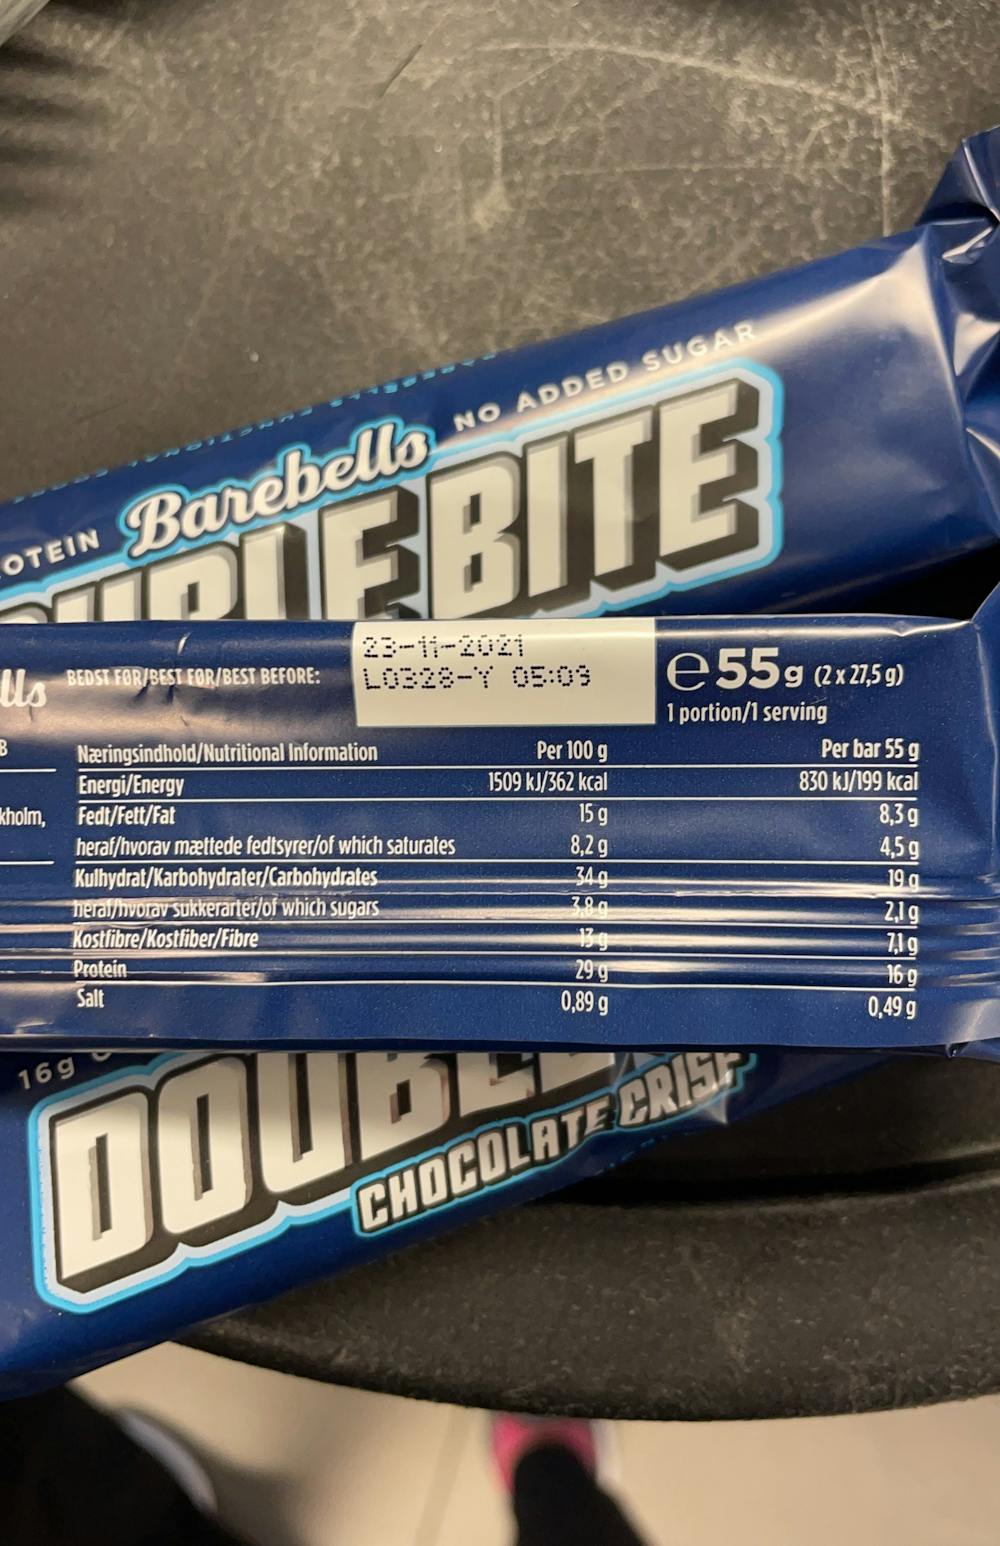 Ingredienslisten til Double bite chocolate crisp, Barebells